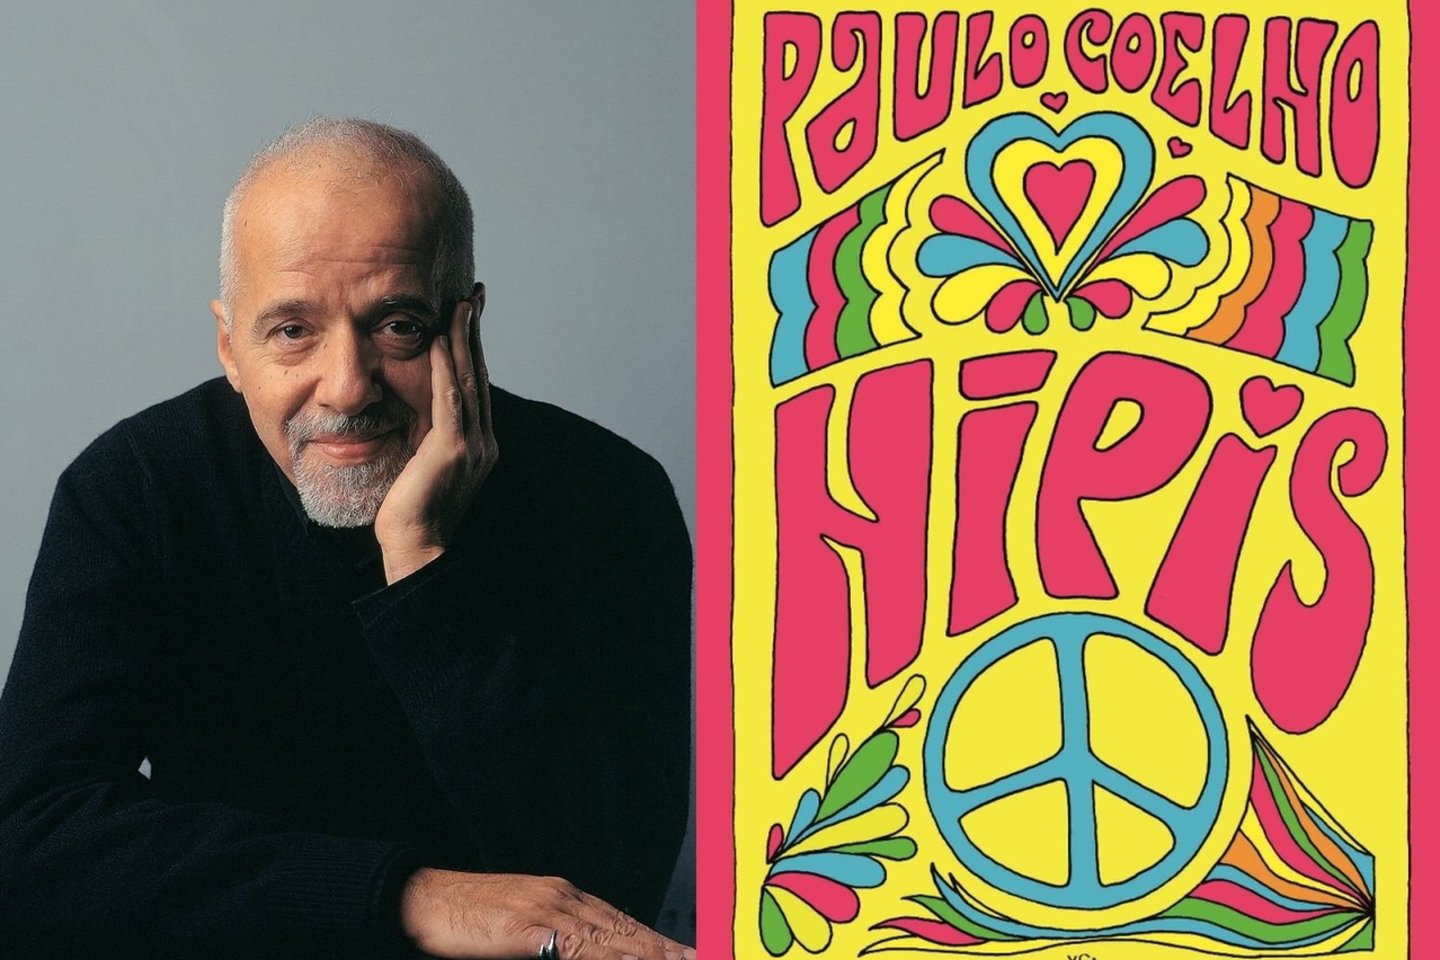 Naujausias P.Coelho kūrinys „Hipis“– tai kvietimas iš naujo išgyventi kartos, kuri ilgėjosi kitokio –laisvės, taikos ir meilės kupino – pasaulio, svajones.